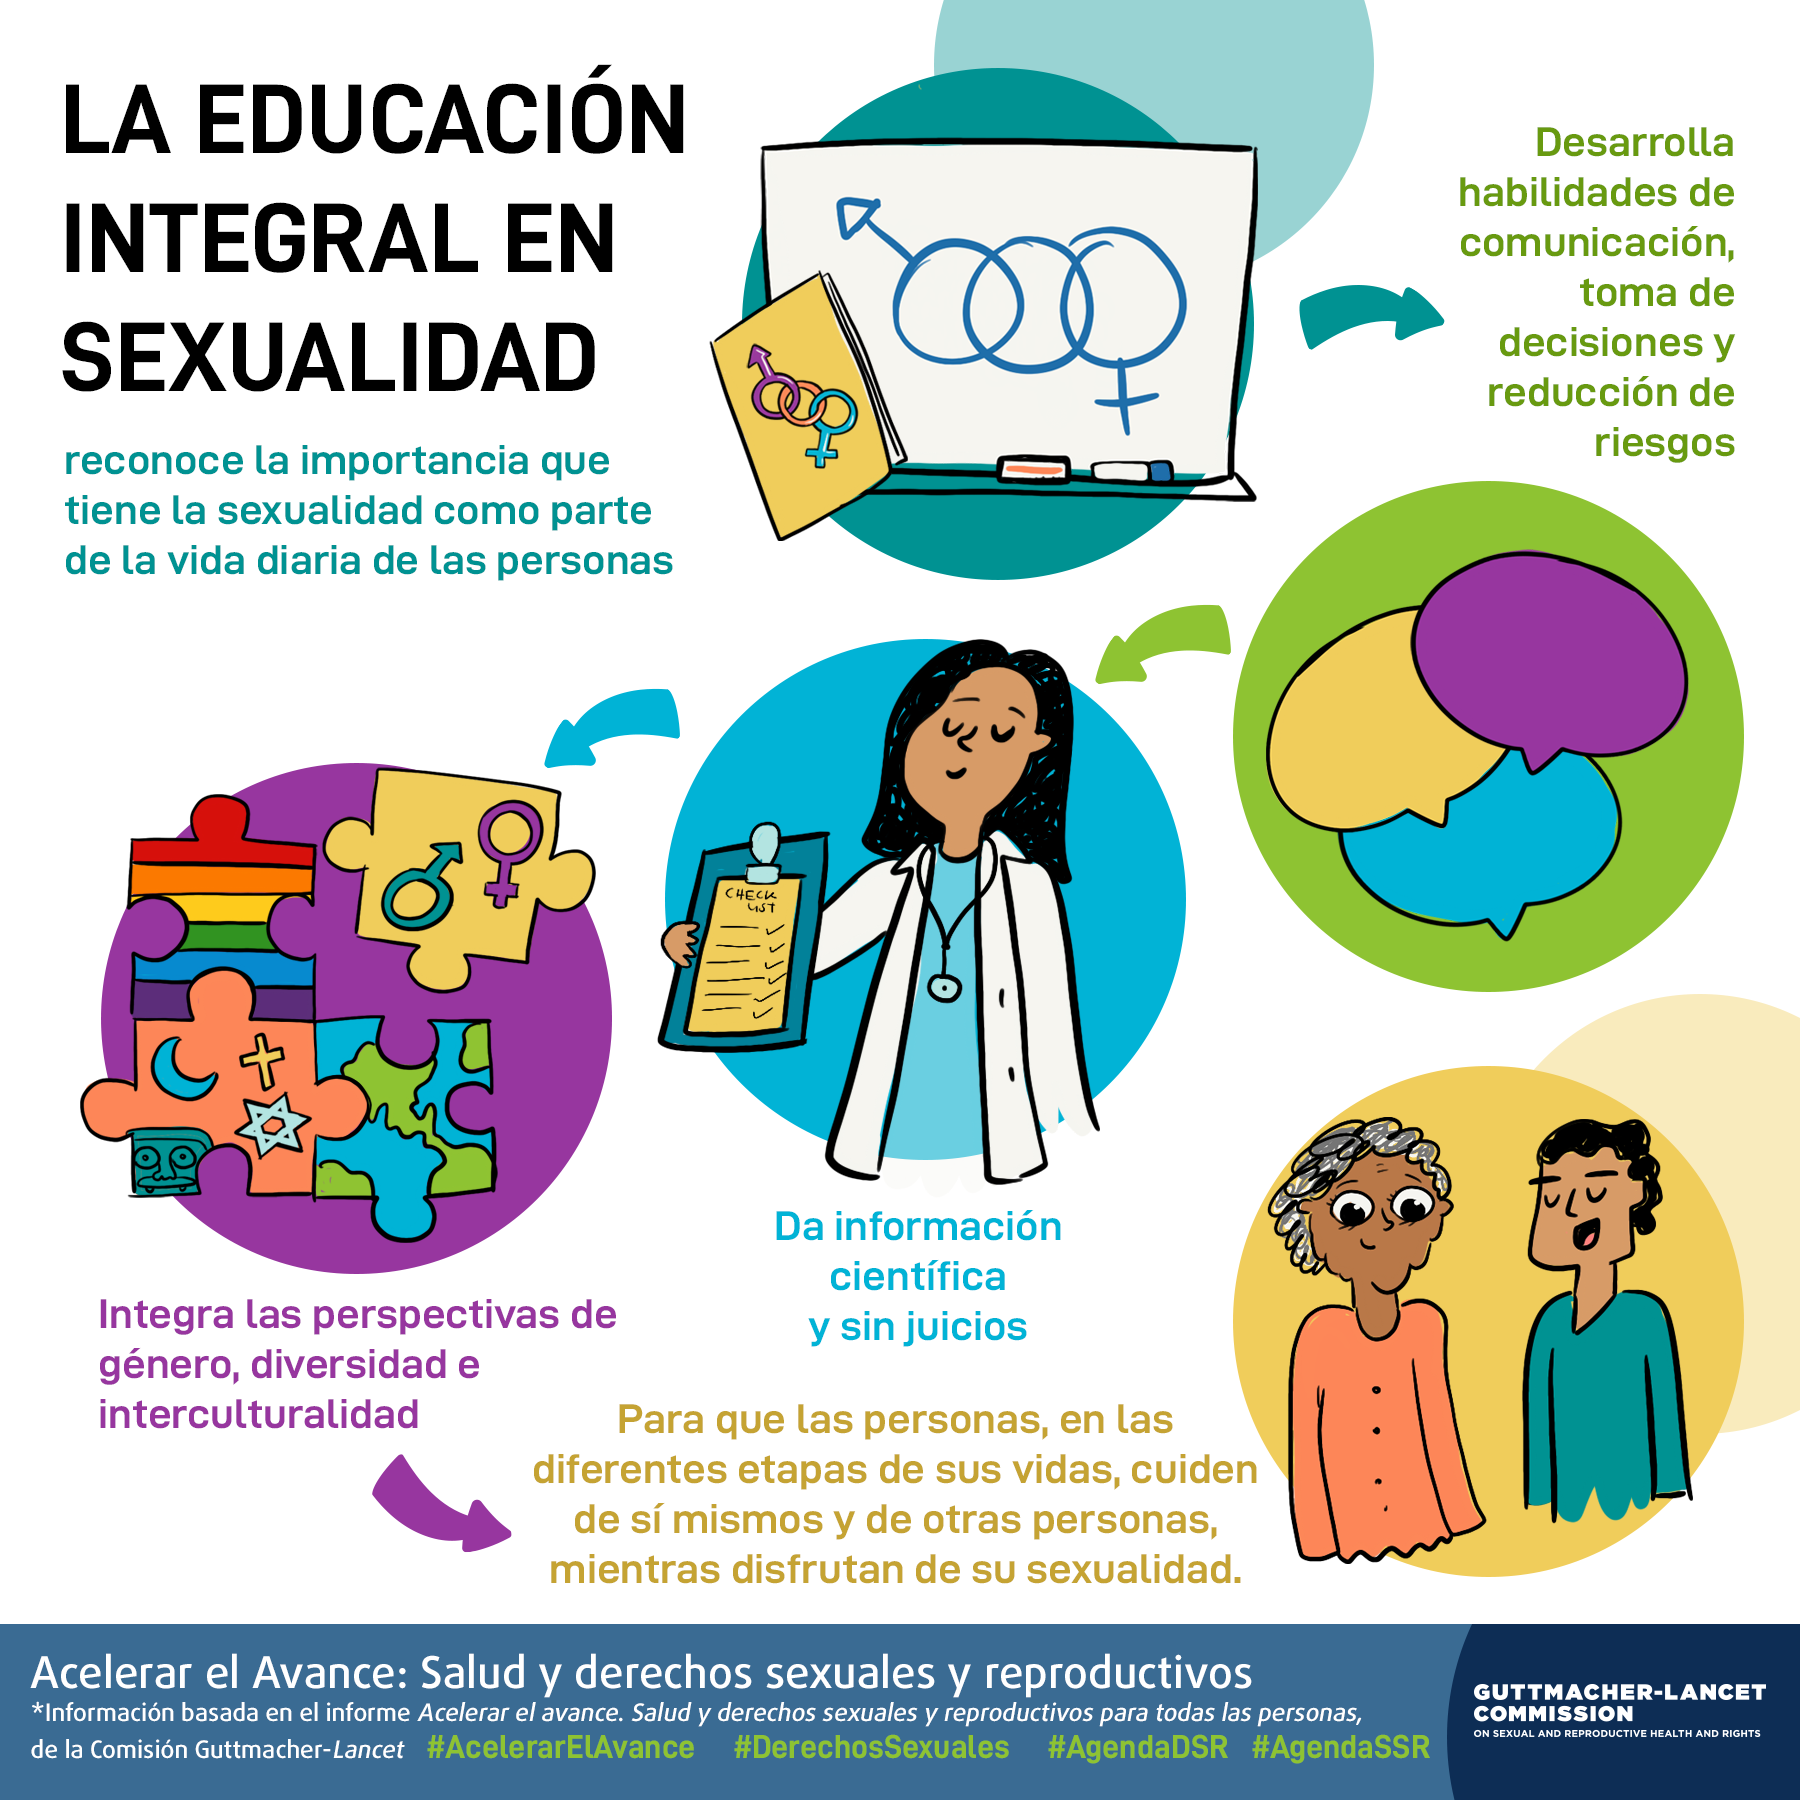 Esta es una infografía sobre la importancia de la Educación Integral en Sexualidad.